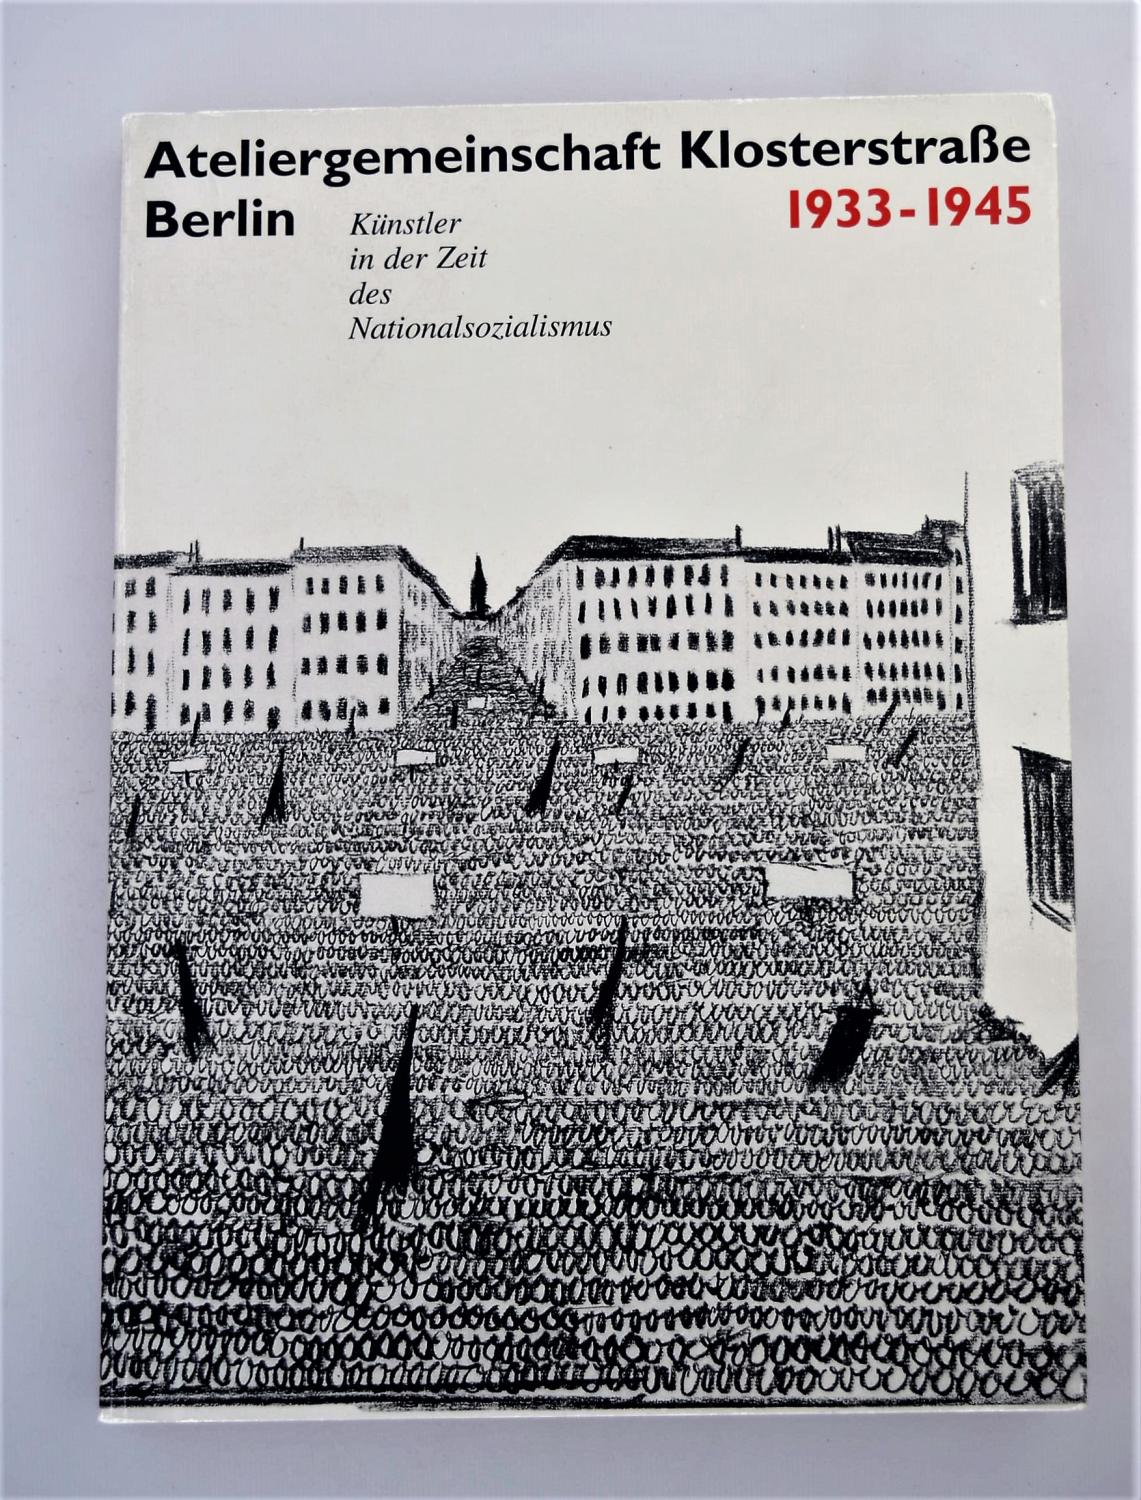 Ateliergemeinschaft Klosterstrasse Berlin 1933-1945: Künstler in der Zeit des Nationalsozialismus